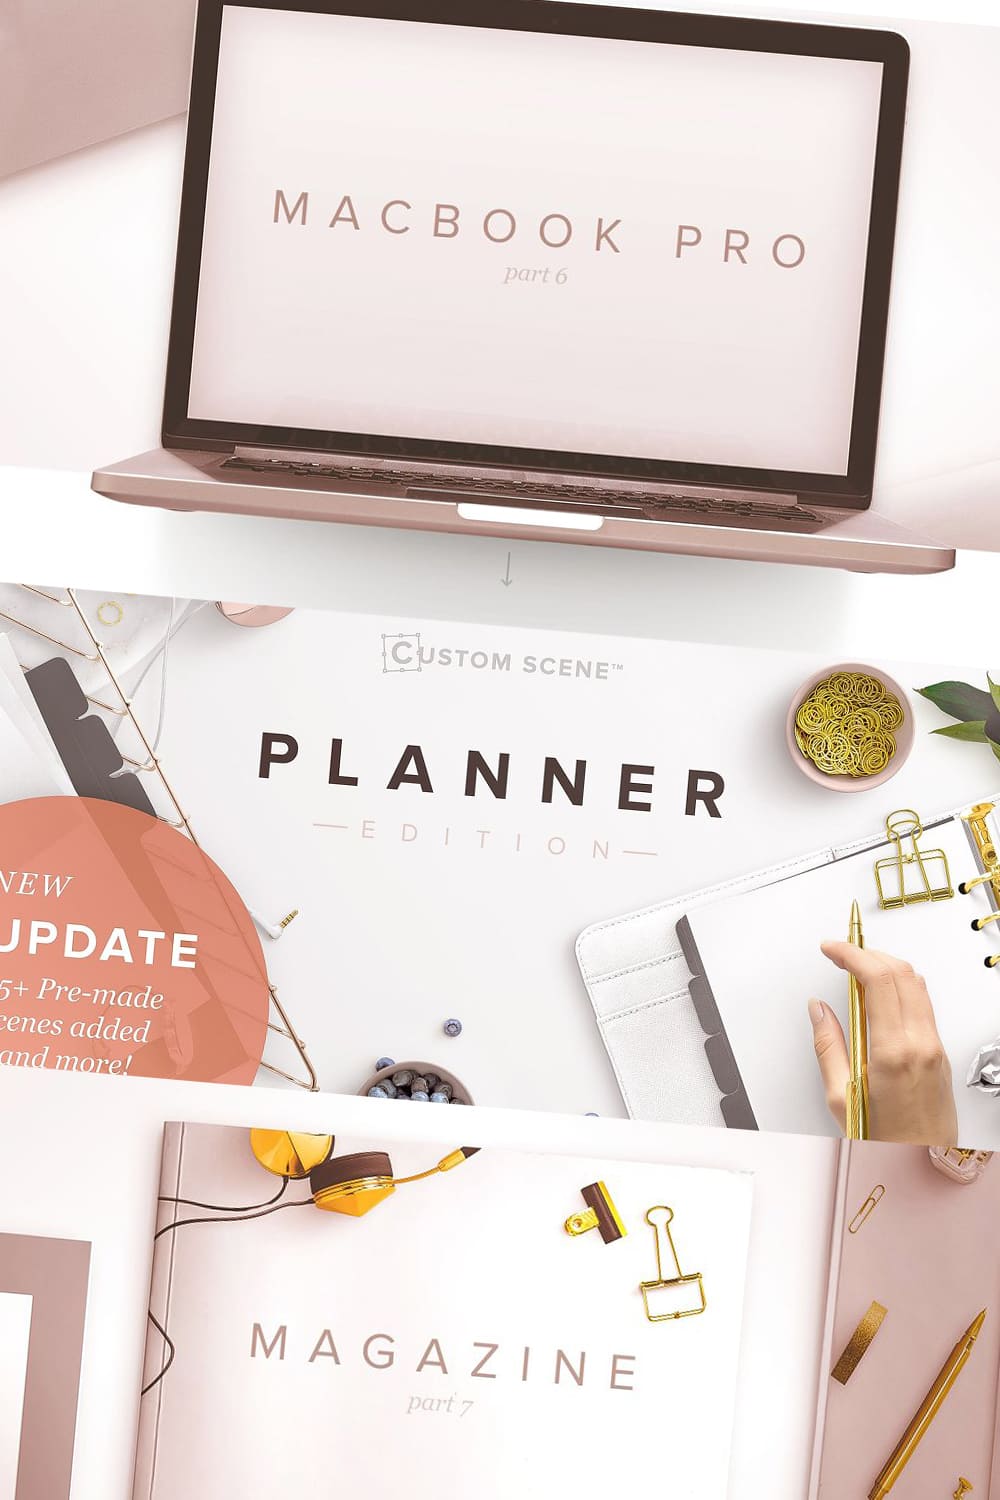 Planner Edition - Custom Scene Pinterest preview.